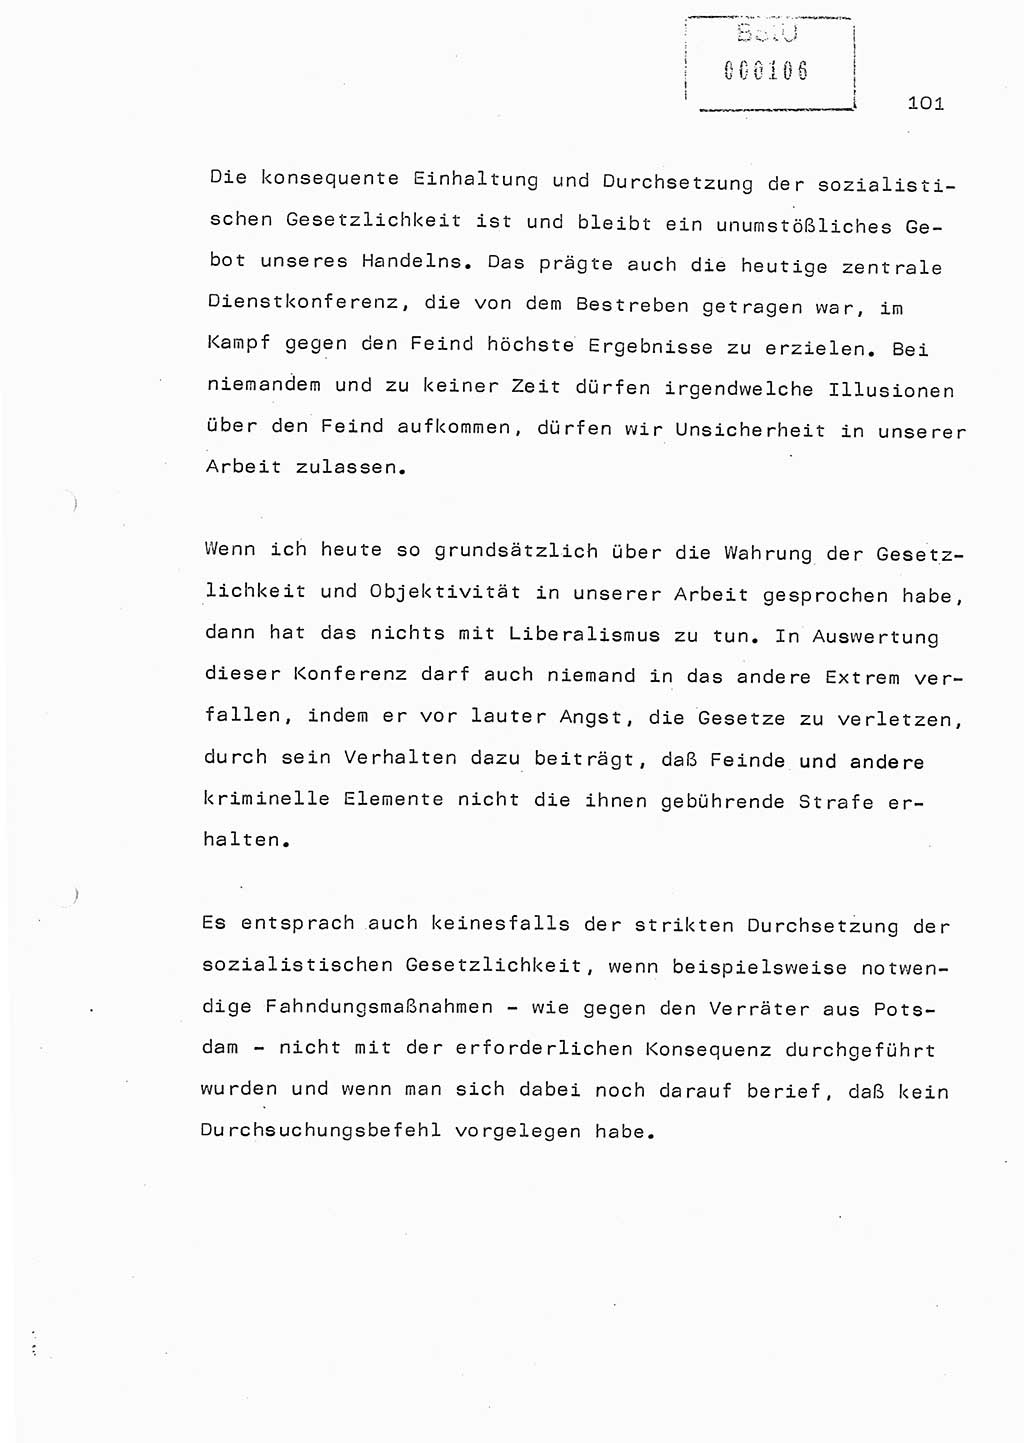 Referat (Generaloberst Erich Mielke) auf der Zentralen Dienstkonferenz am 24.5.1979 [Ministerium für Staatssicherheit (MfS), Deutsche Demokratische Republik (DDR), Der Minister], Berlin 1979, Seite 101 (Ref. DK DDR MfS Min. /79 1979, S. 101)